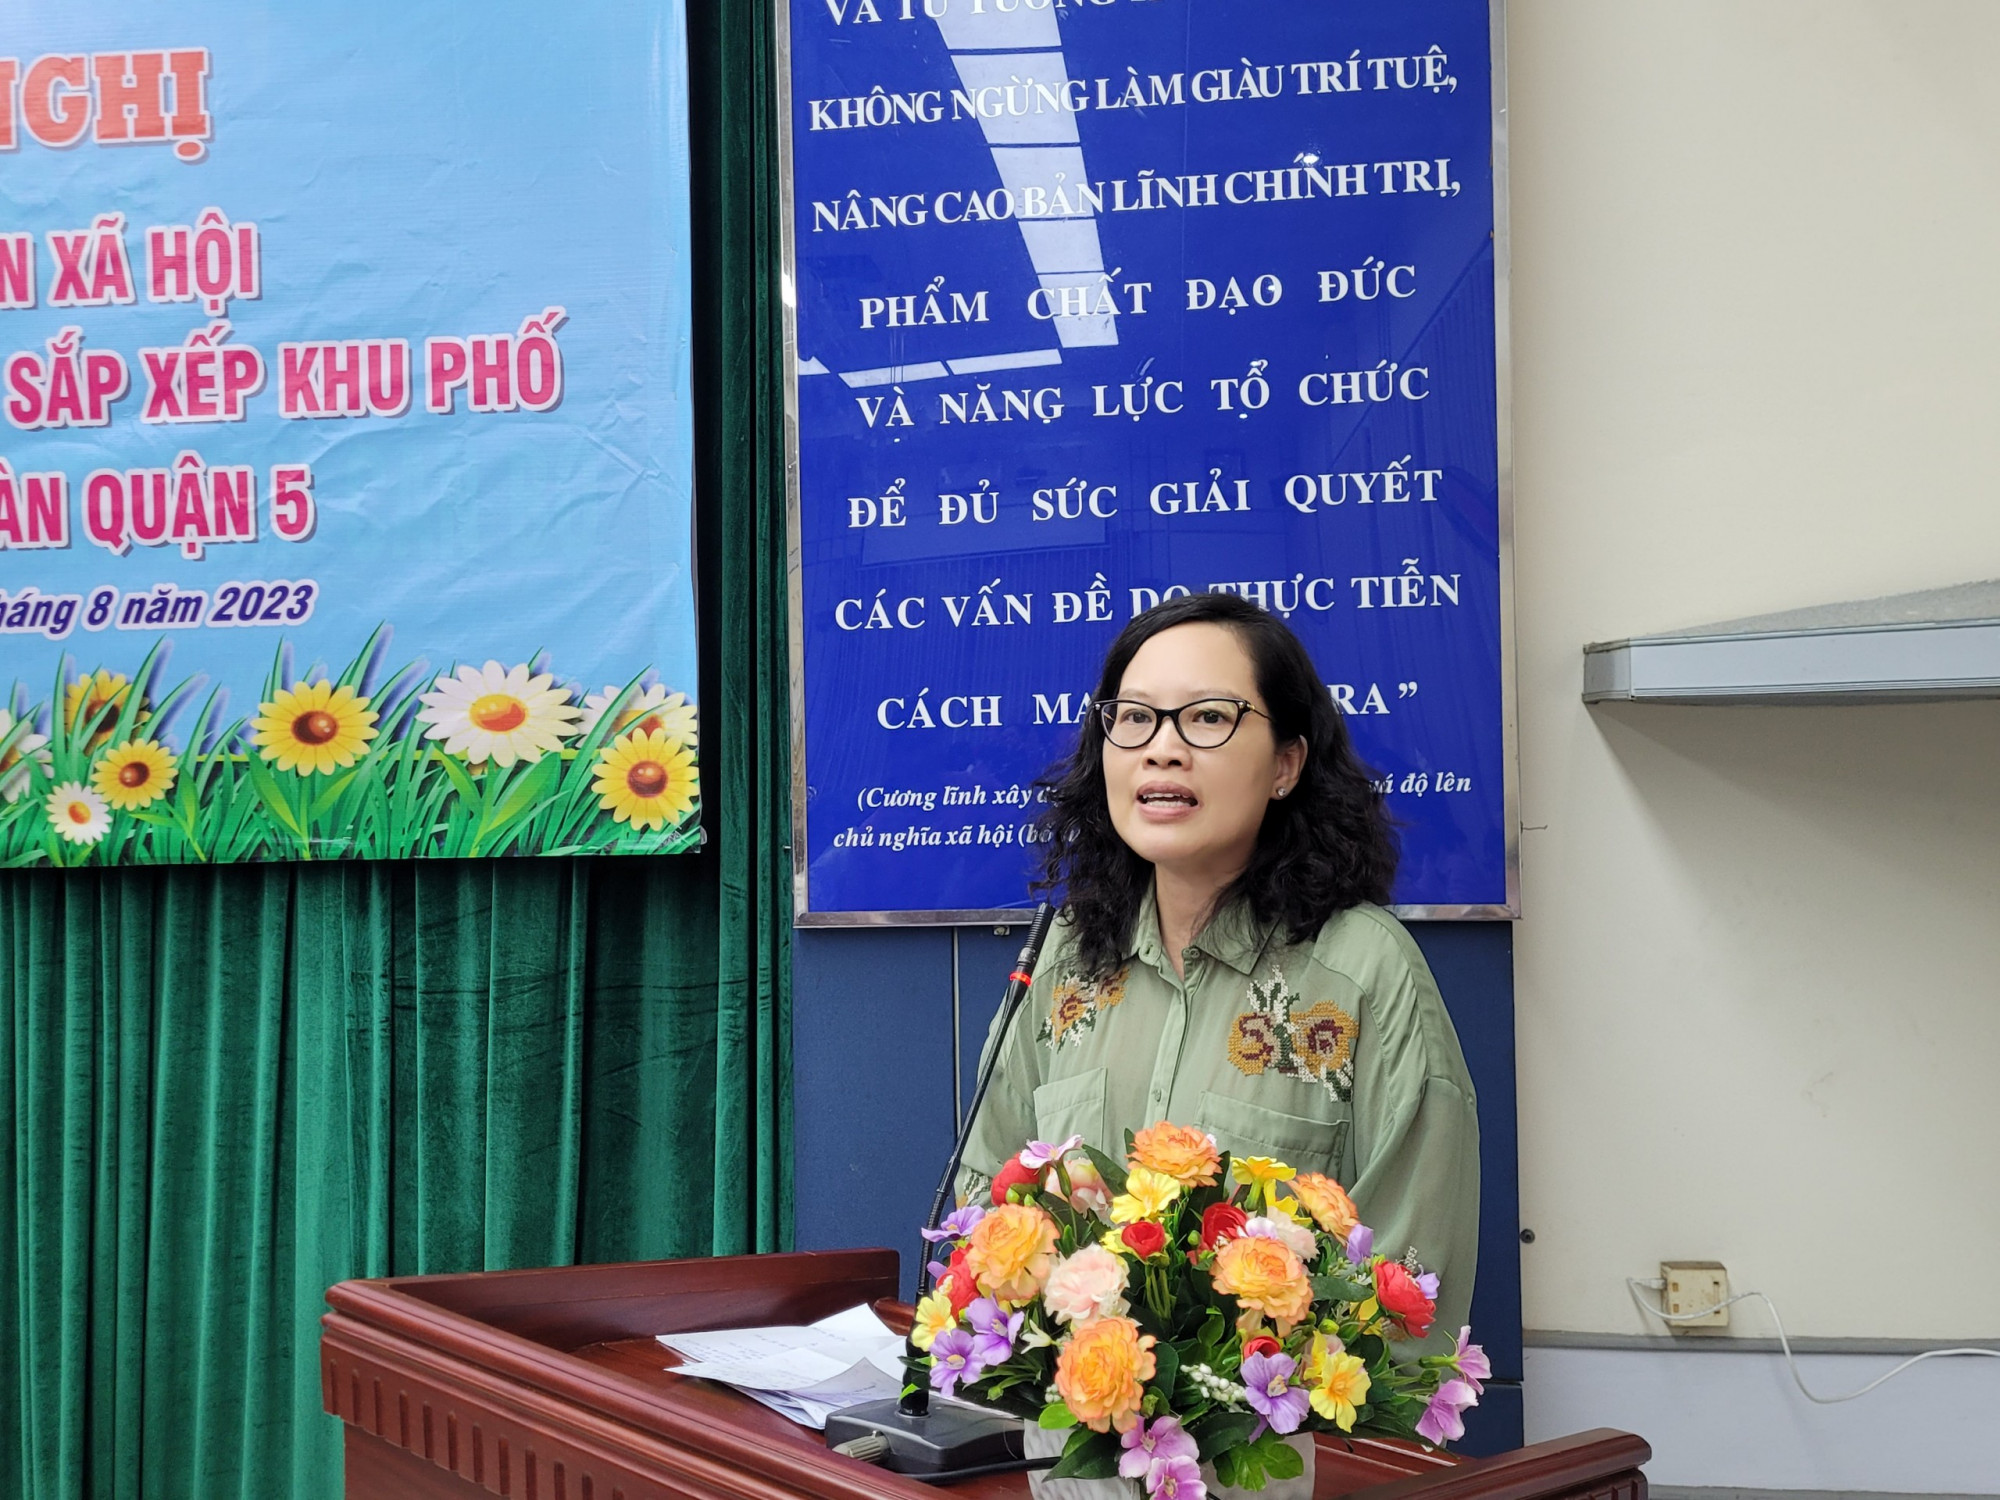 bà Nguyễn thị Minh Phượng – Phó Chủ tịch UBND quận 5 - phản hồi các ý kiến của đại biểu tại hội nghị